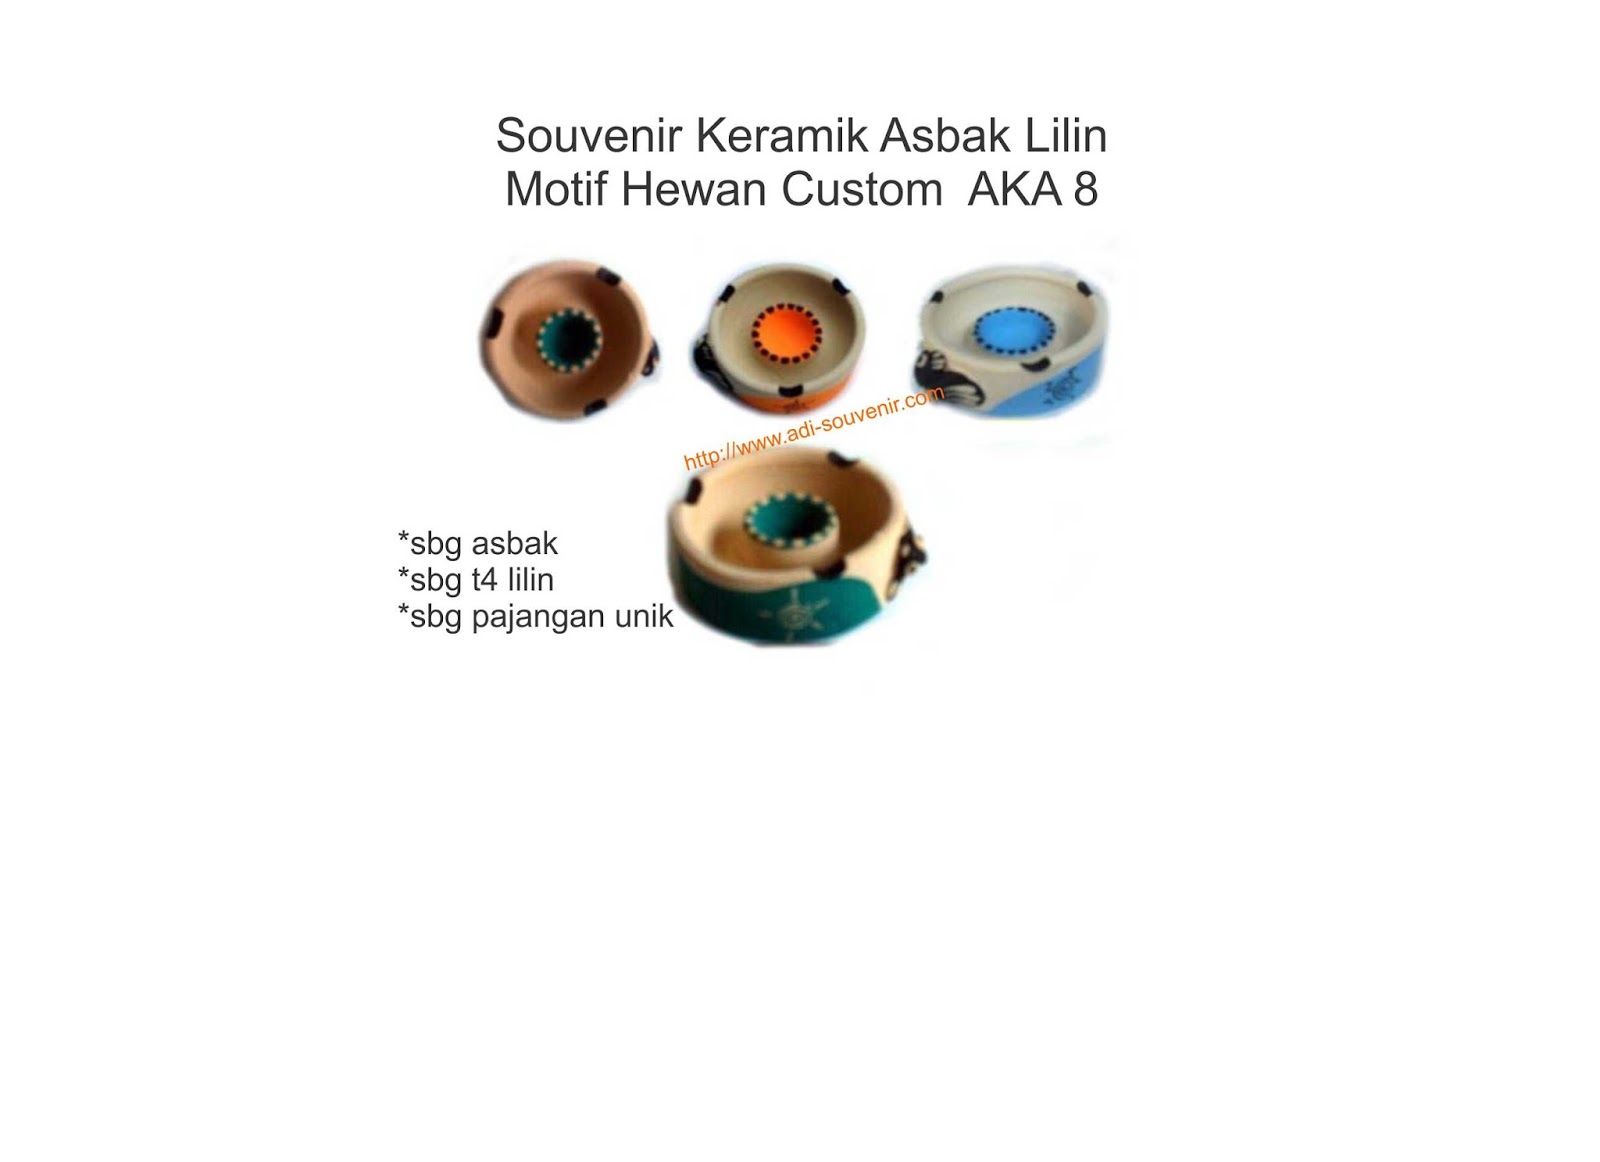  Keramik Asbak Lilin Motif Hewan Custom AKA 8 Adi Souvenir